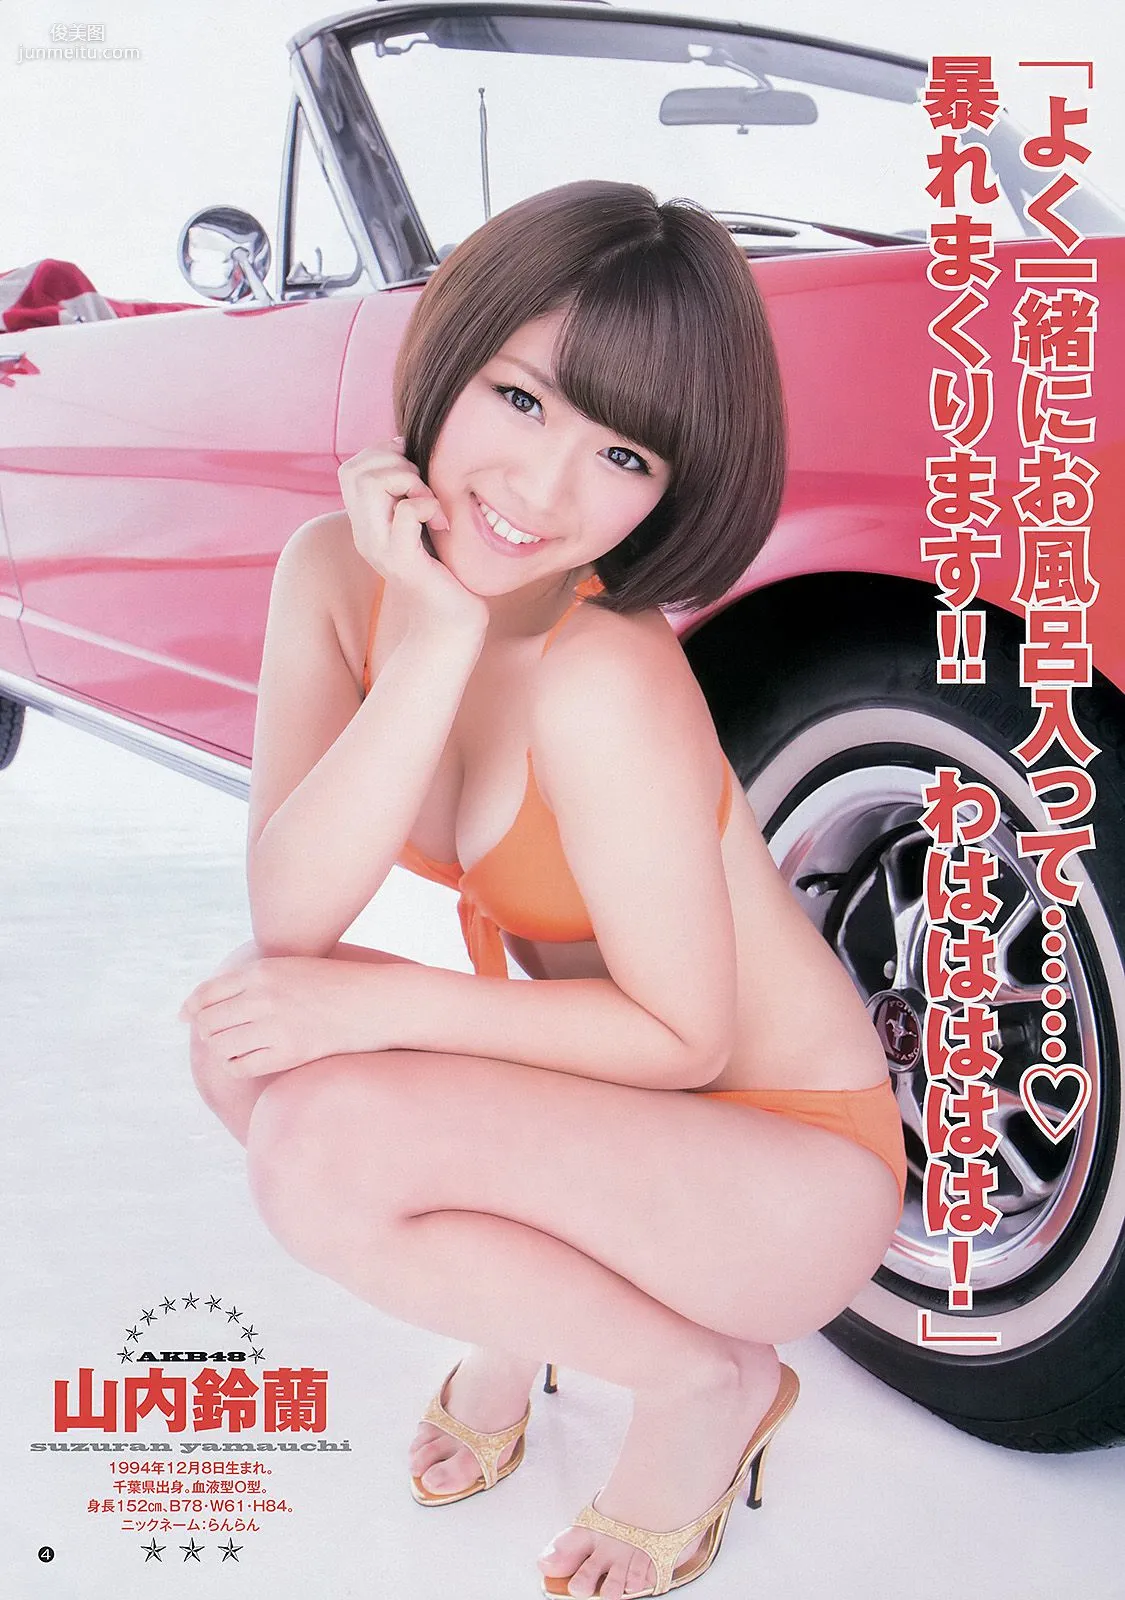 渡辺美優紀 山内鈴蘭 永尾まりや [Weekly Young Jump] 2012年No.50 写真杂志12